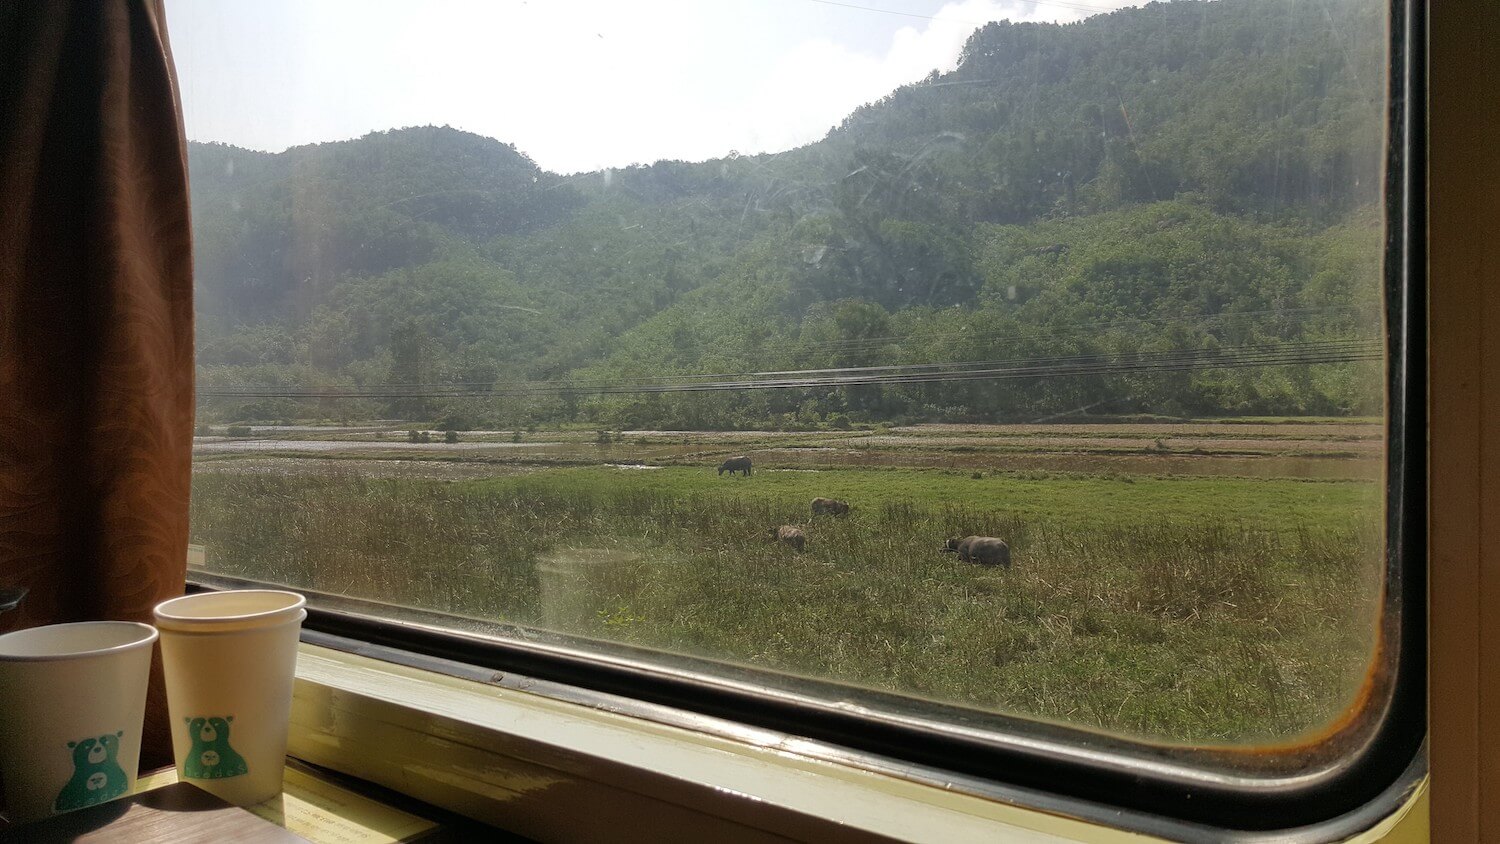 Vue du train: des collines, une rizière, des buffles d'eau